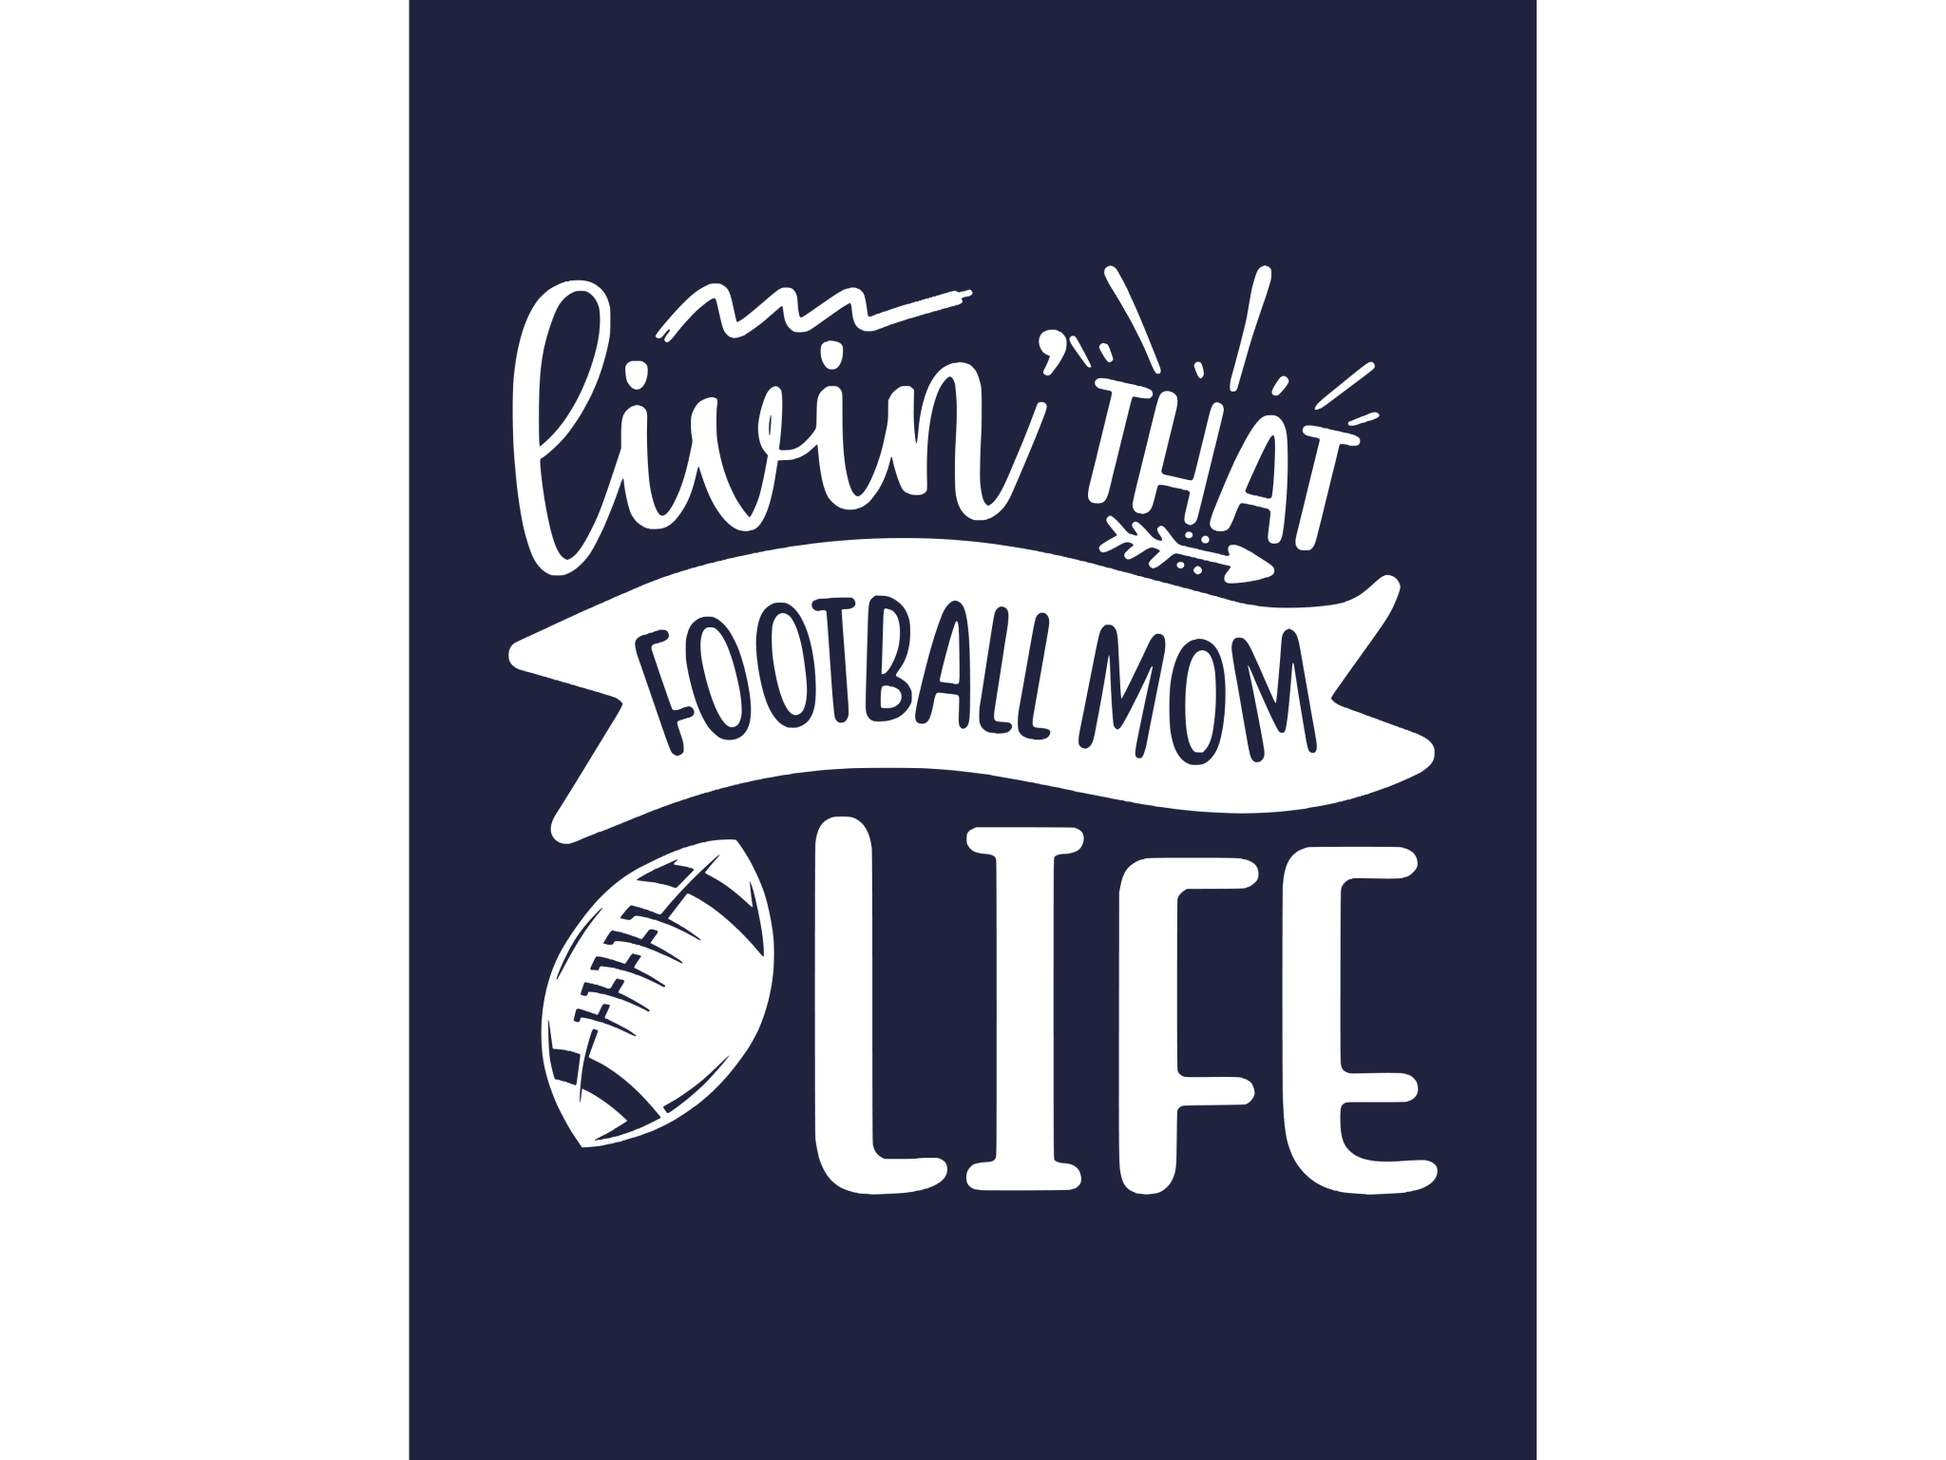 Livin That Football Mom Life T-shirt or Sweatshirt - smuniqueshirts